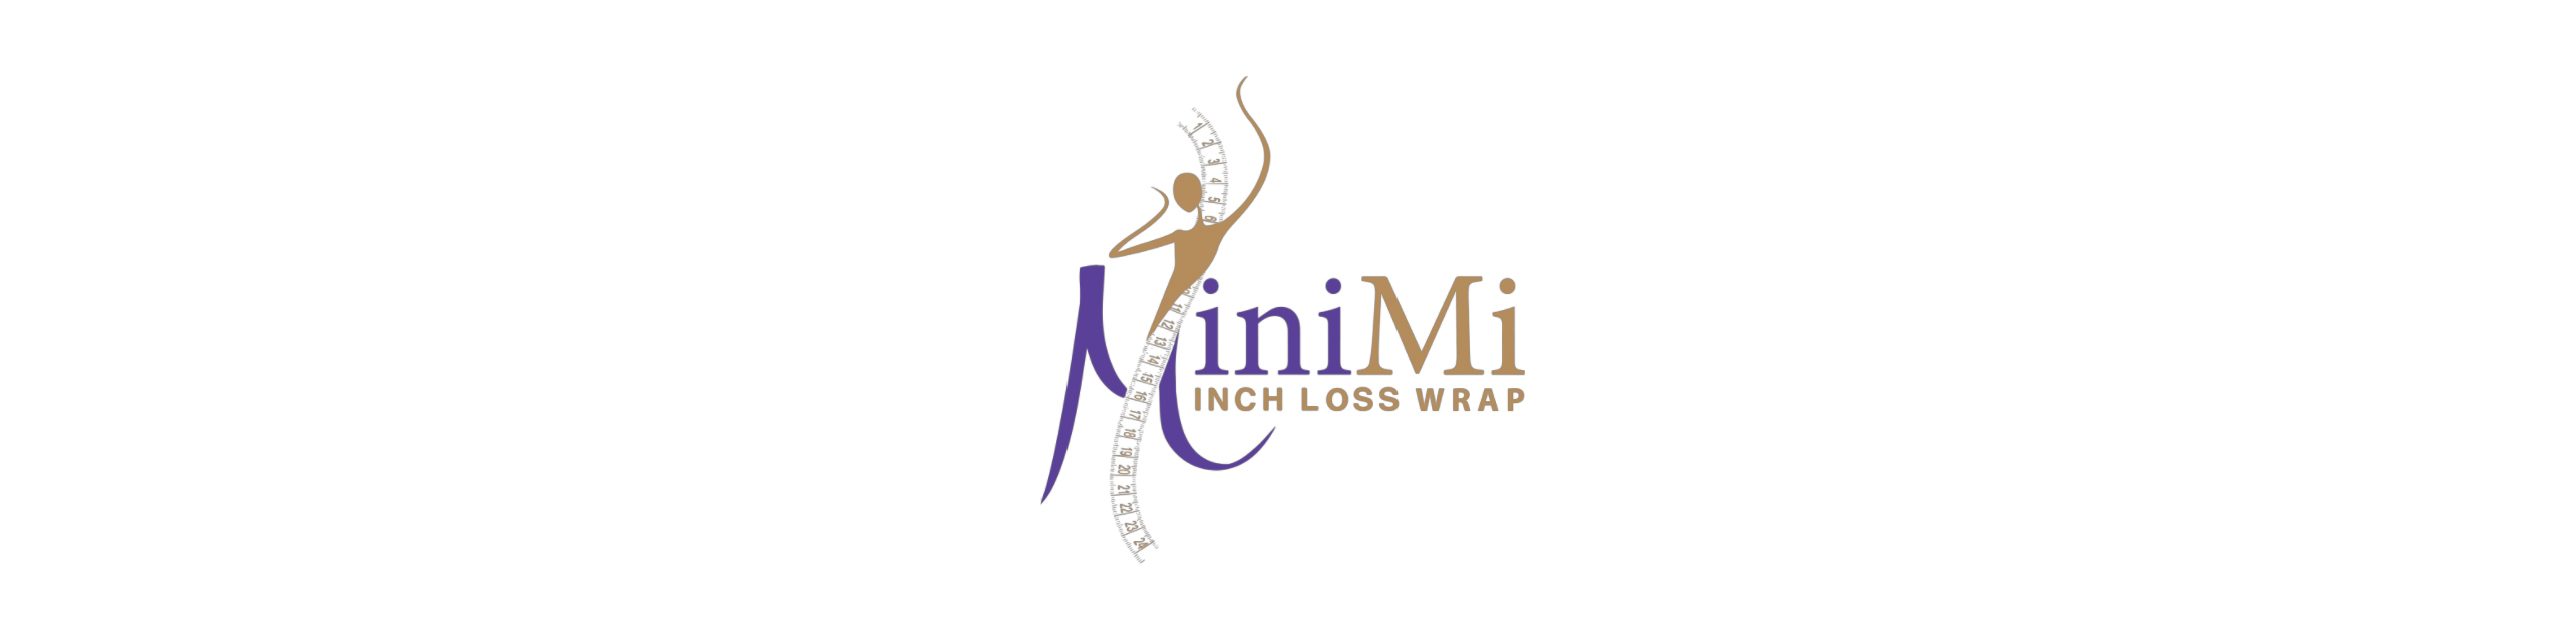 MiniMi Body Wrap